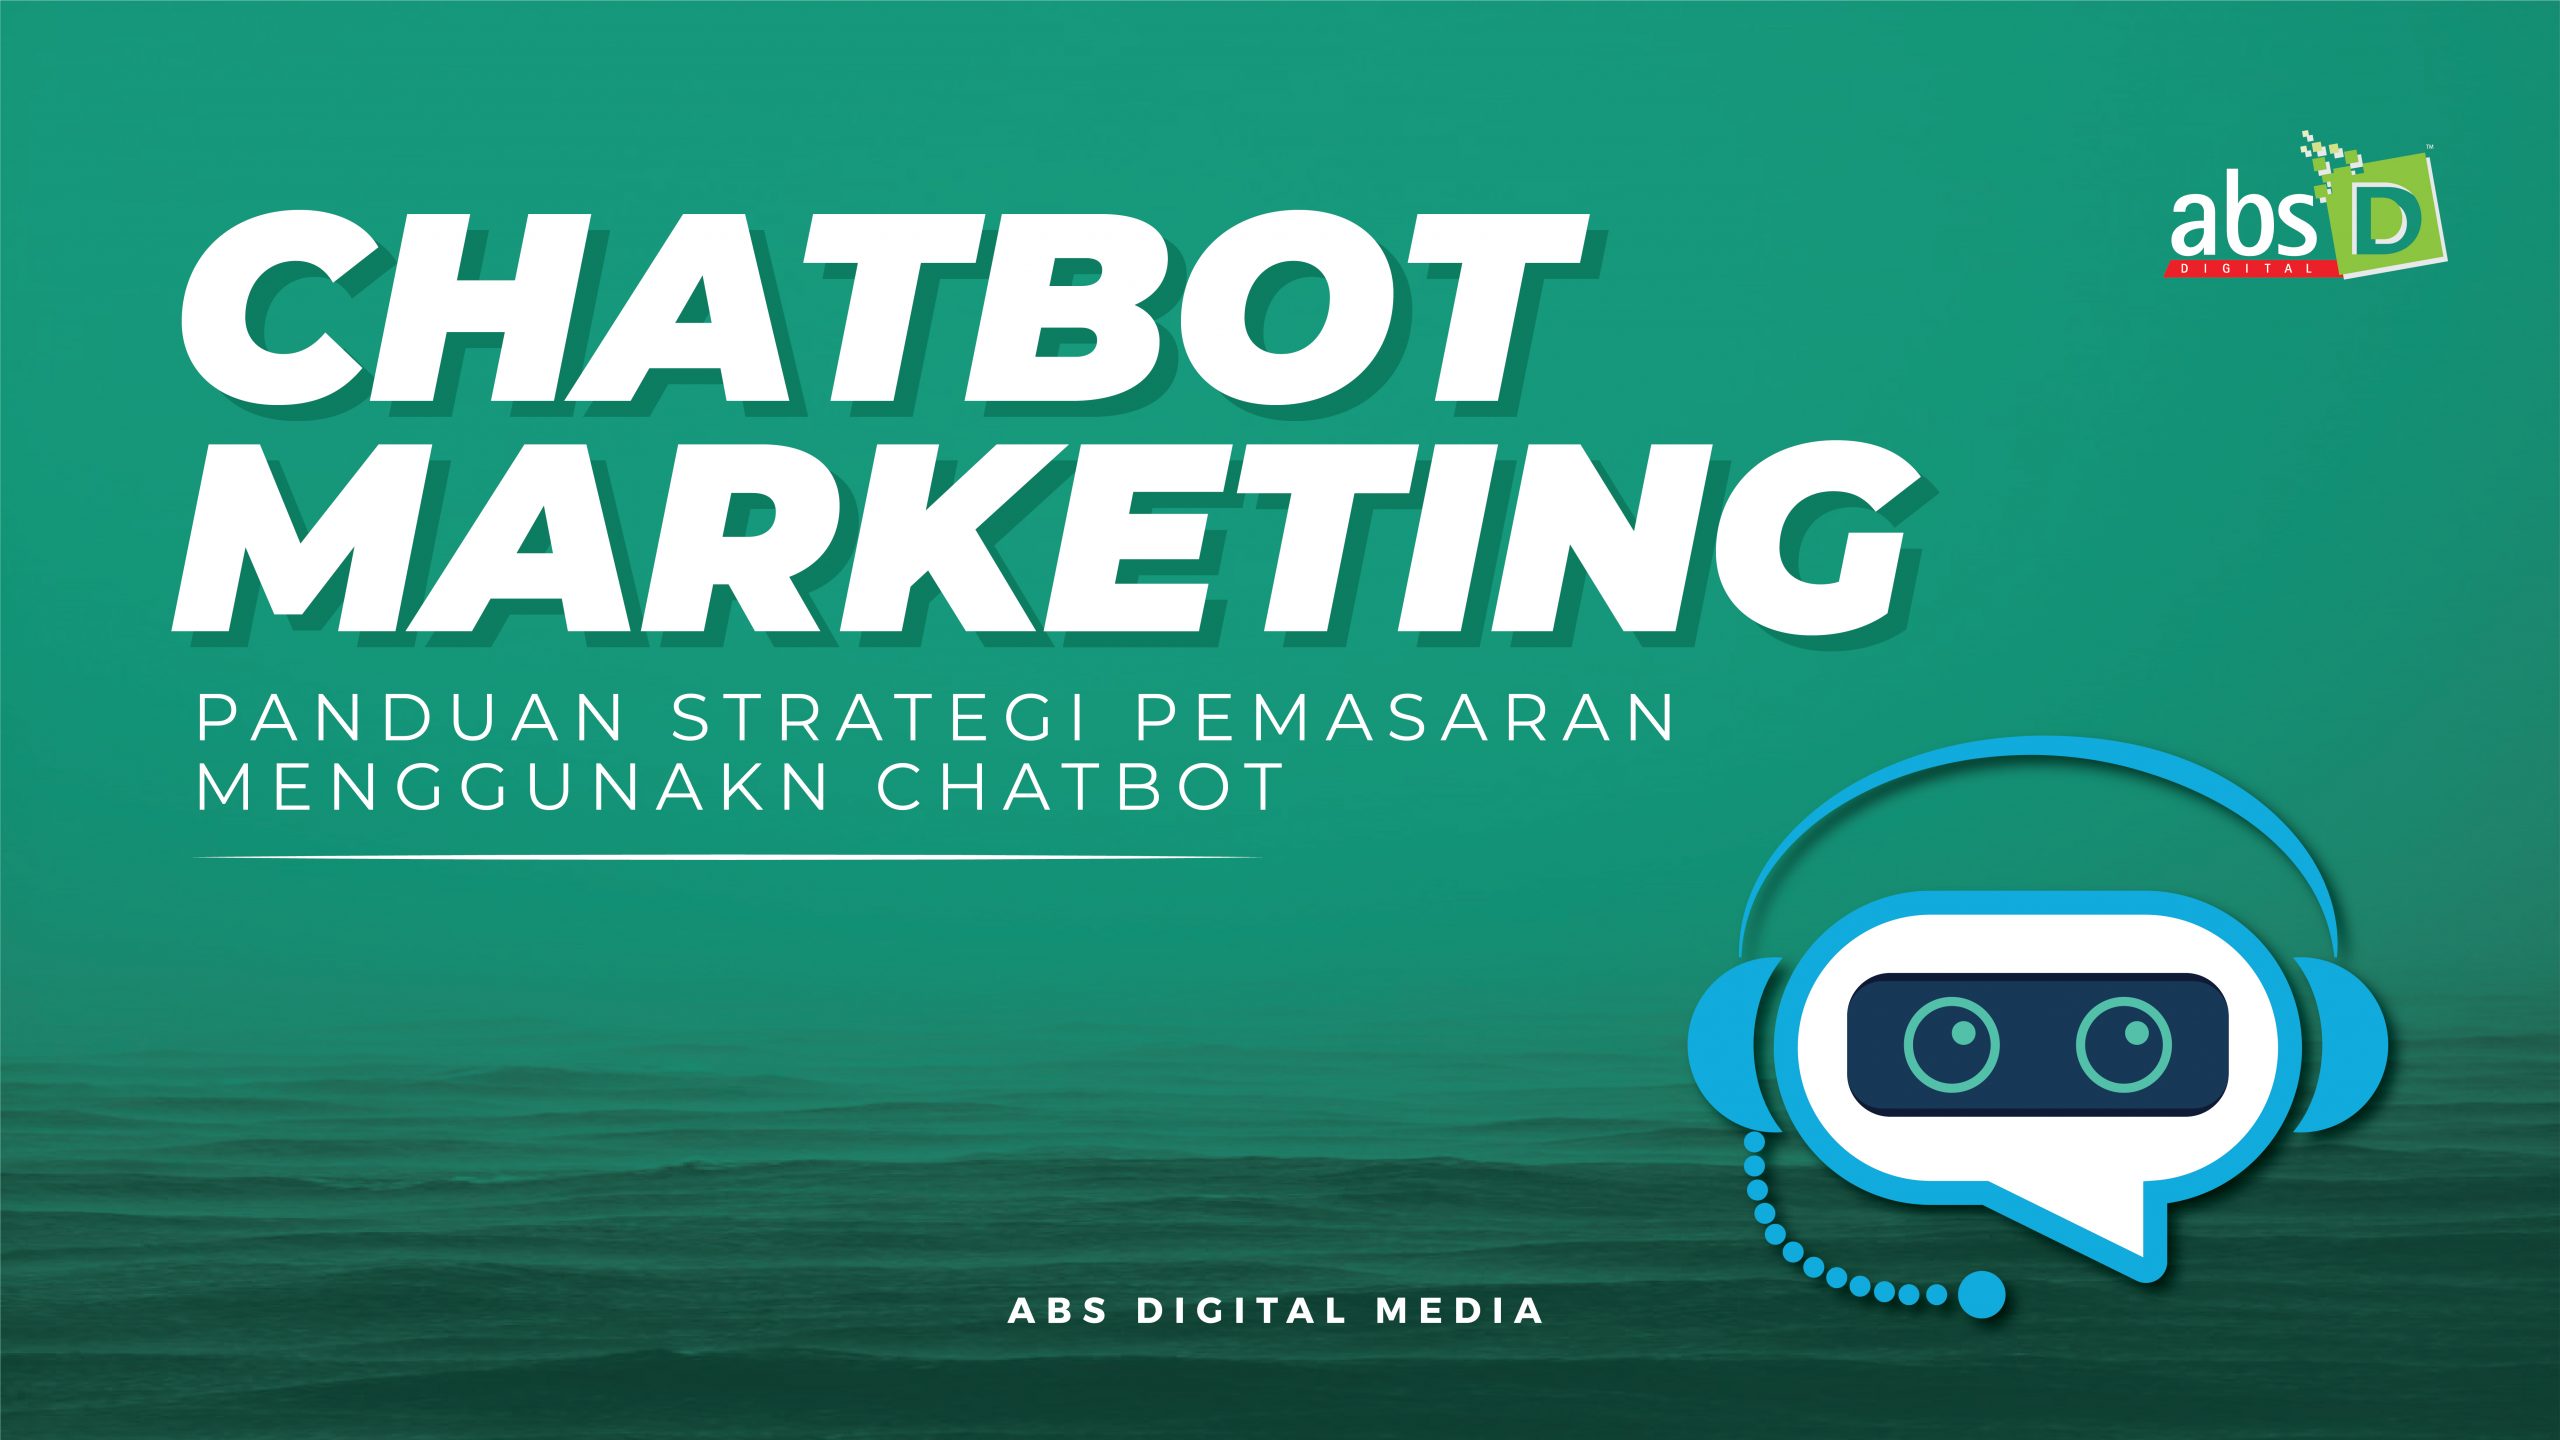 Chatbot Marketing : Panduan Dan Strategi Pemasaran Menggunakan Chatbot